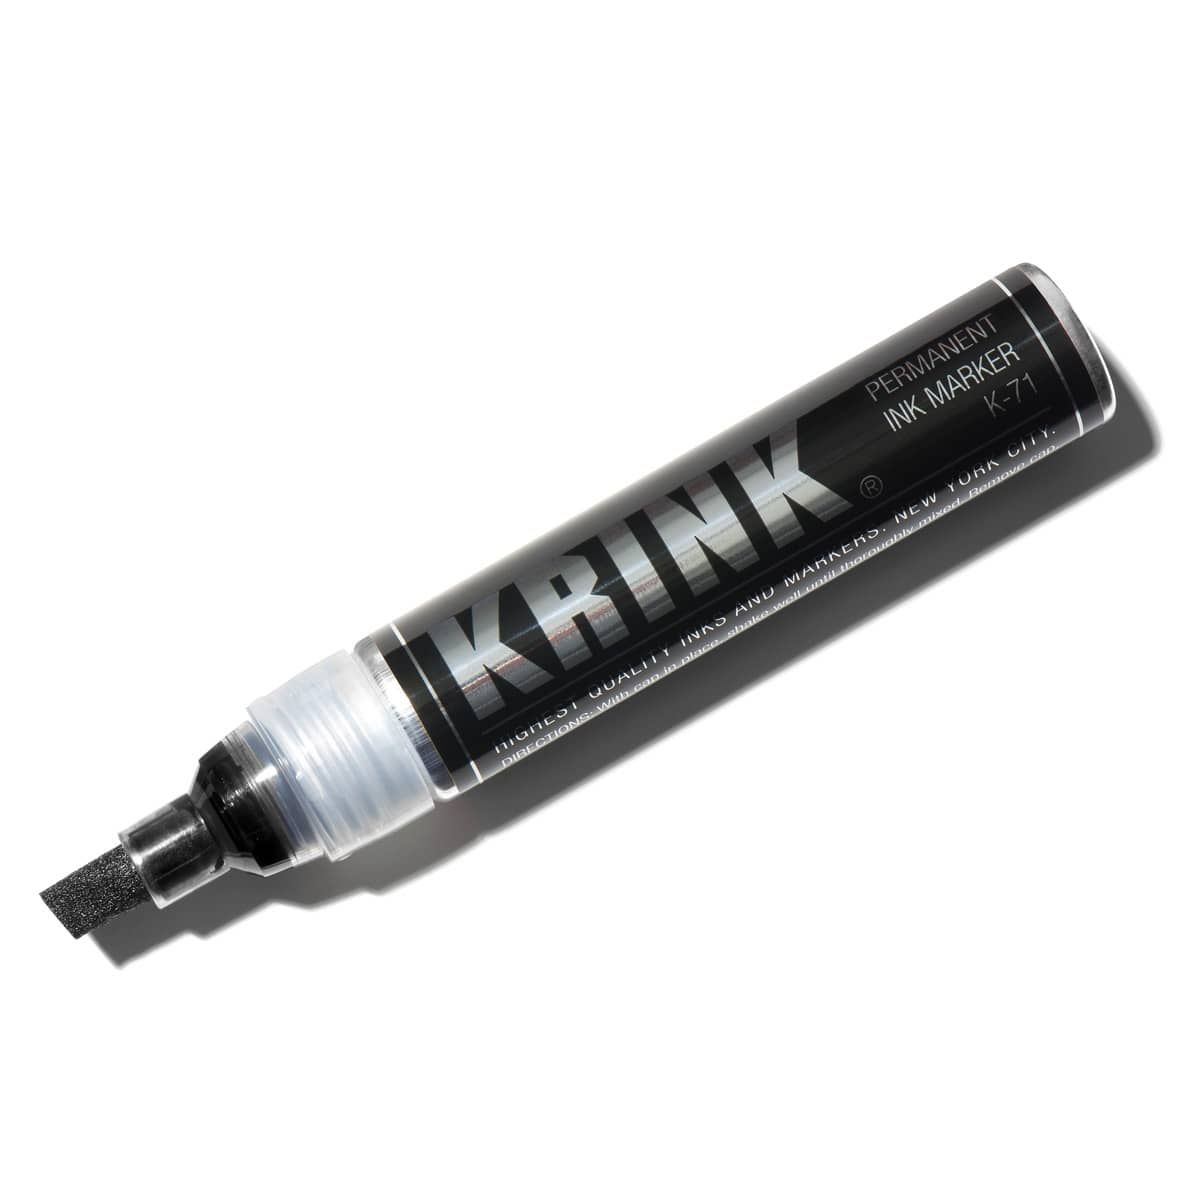 Krink K-71 Permanent Alcohol Ink Marker 7 mm Super Black